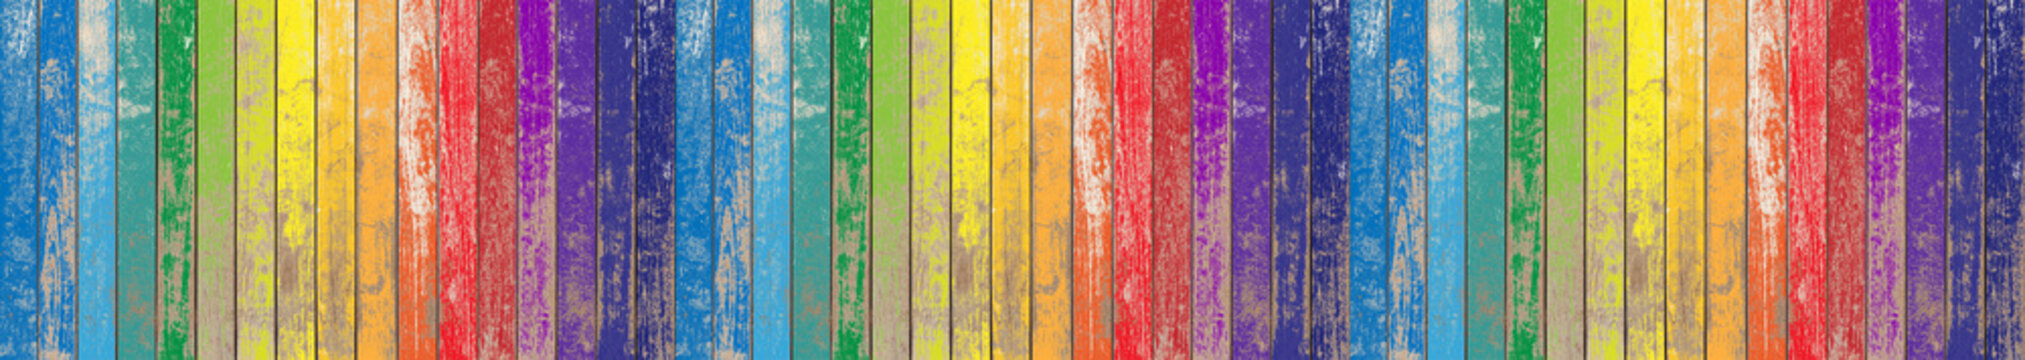 Fond bois de bardage aux couleurs de l’arc-en-ciel © Unclesam